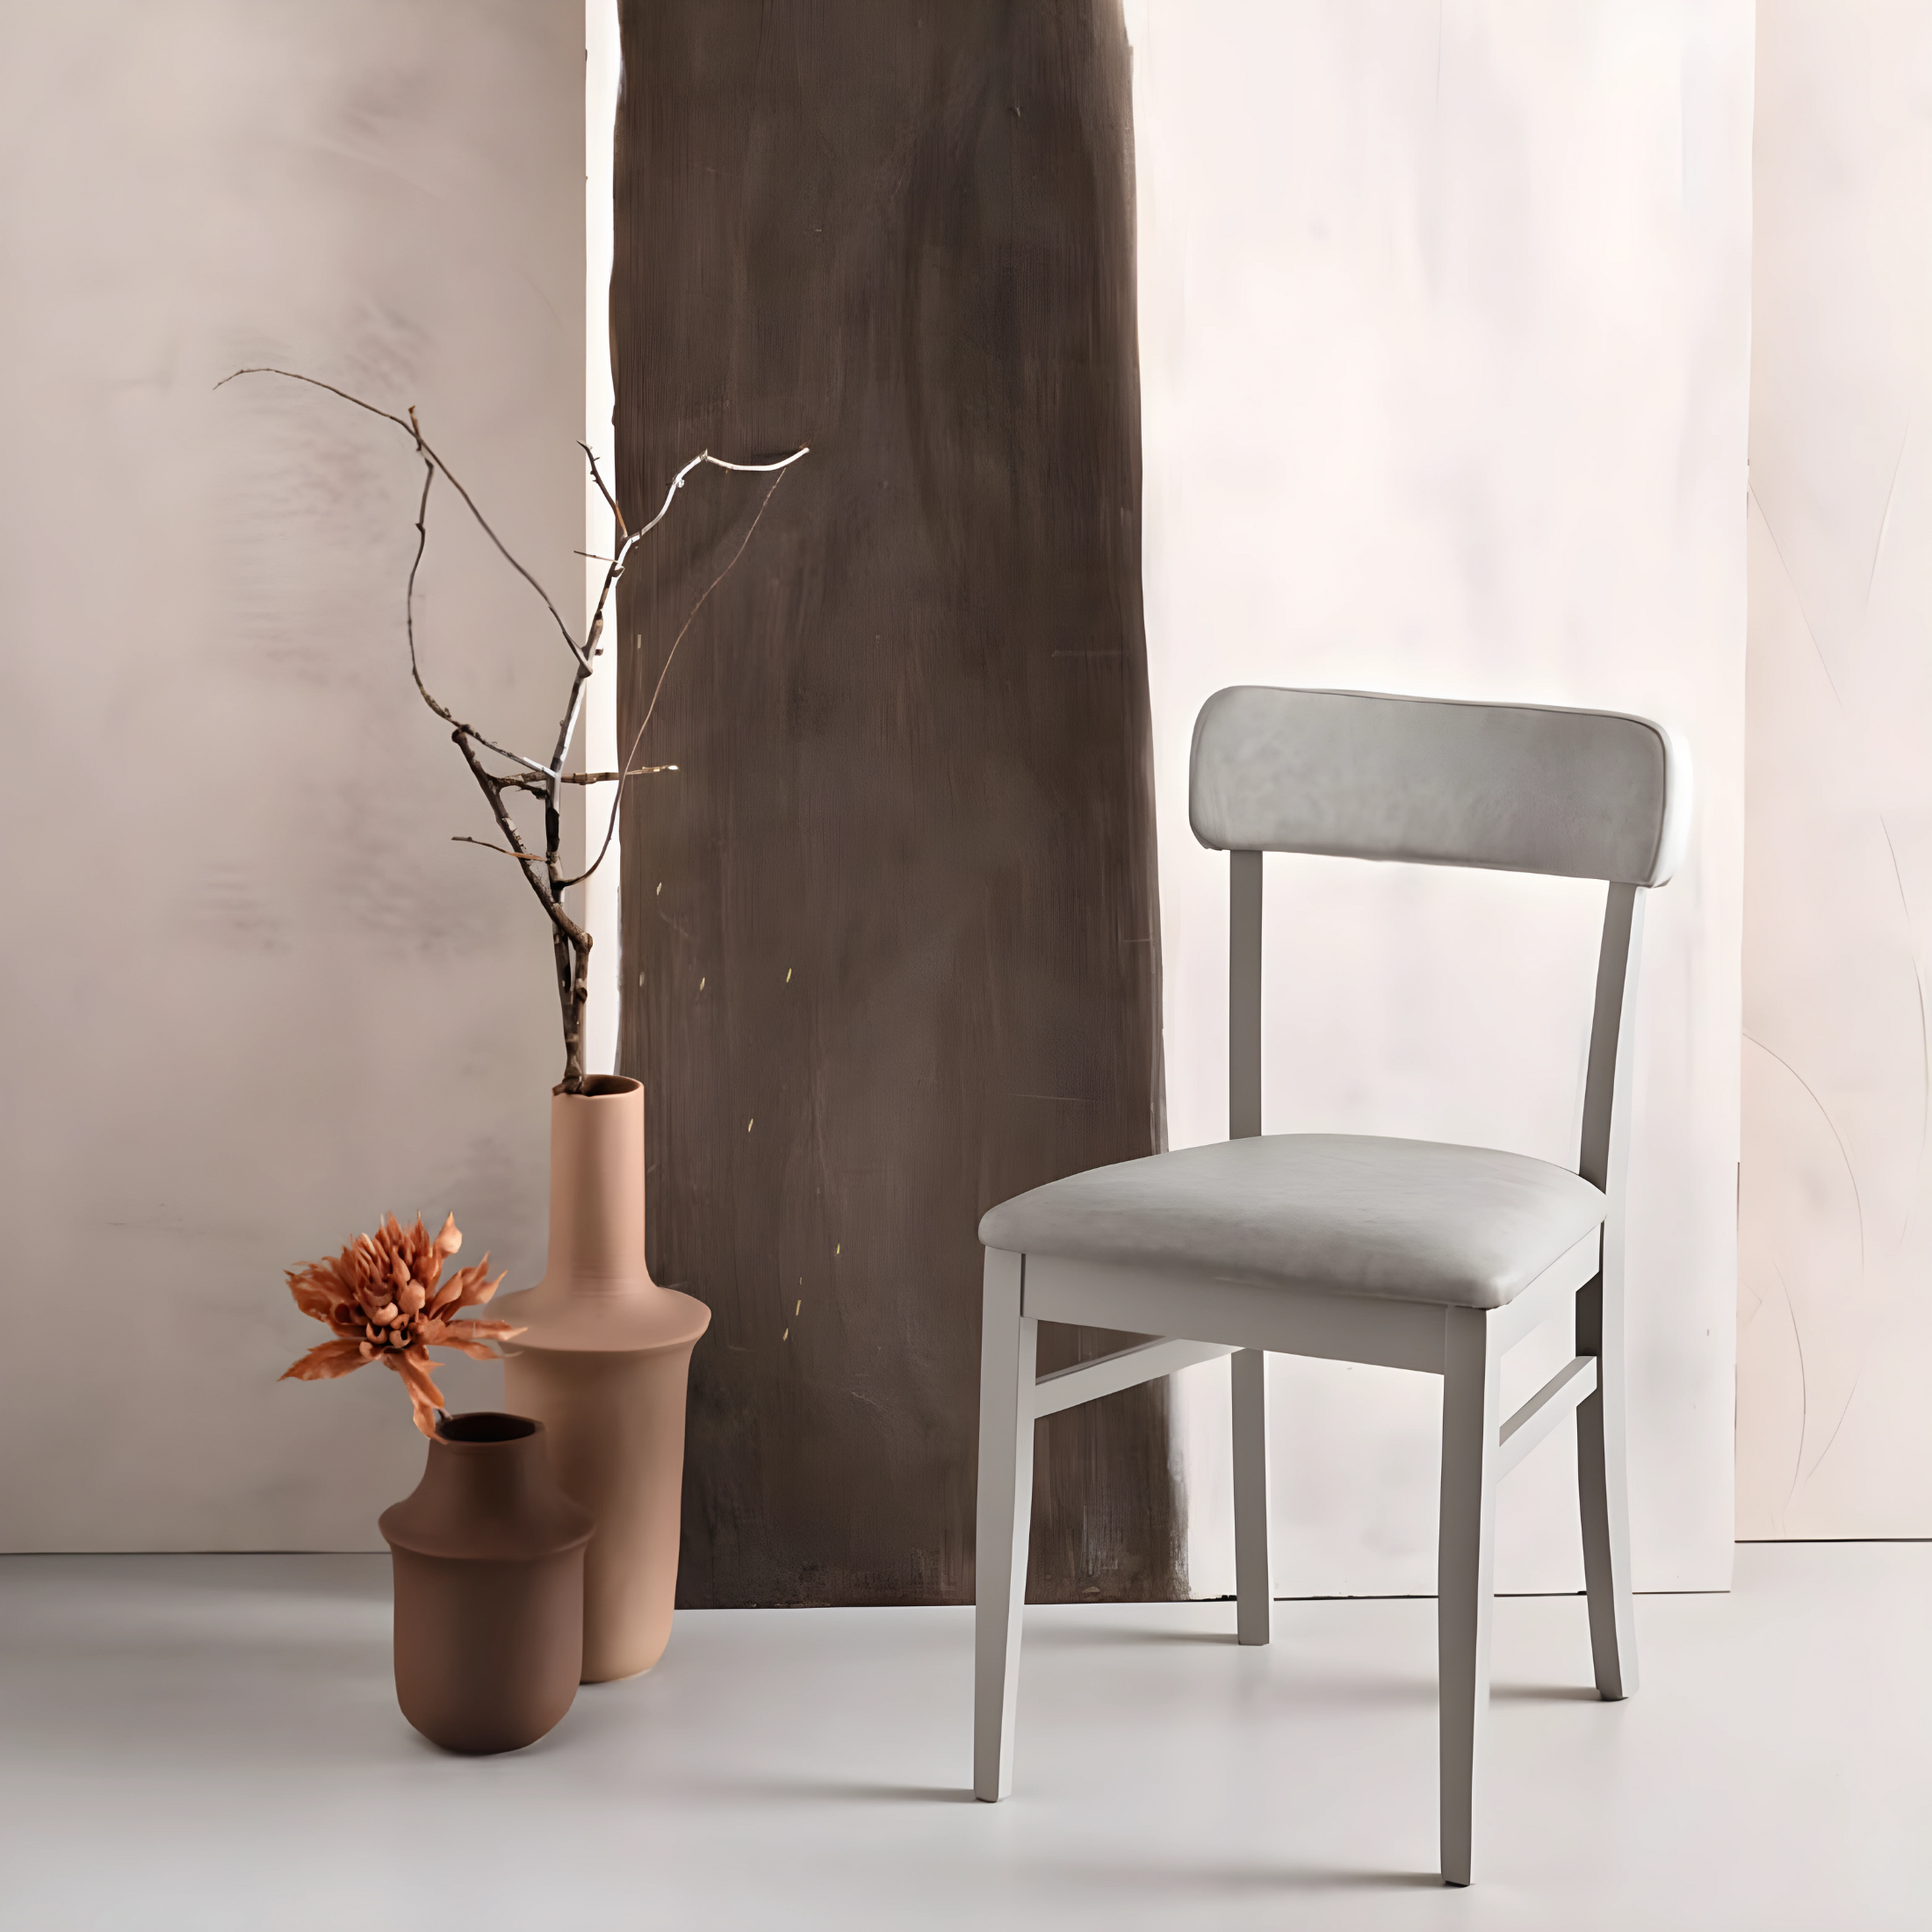 Chaise en éco-cuir "Lipsia" avec structure en bois 46x45 cm 82h